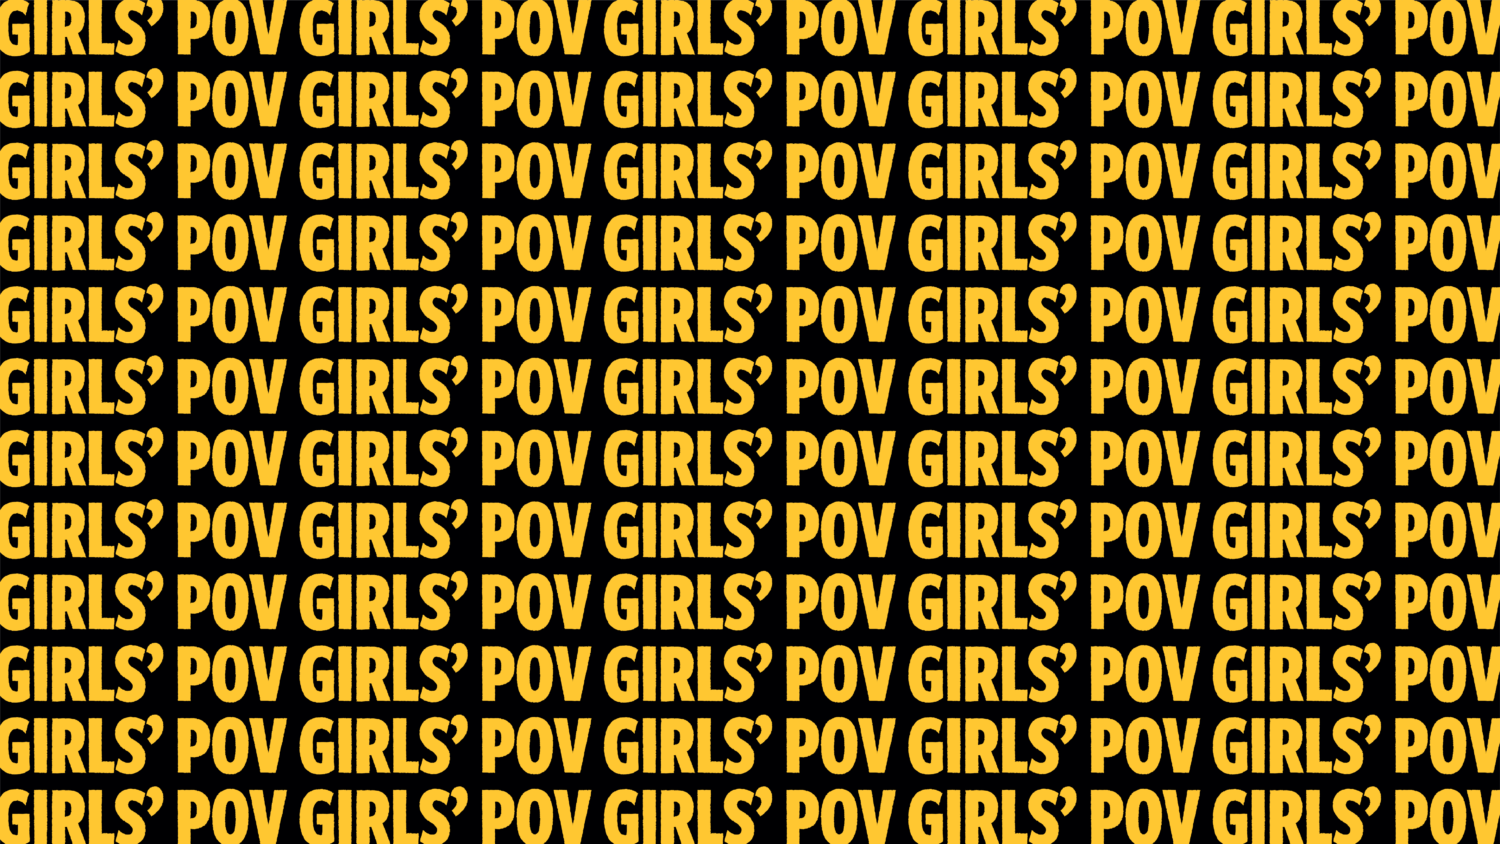 Girl's Pov